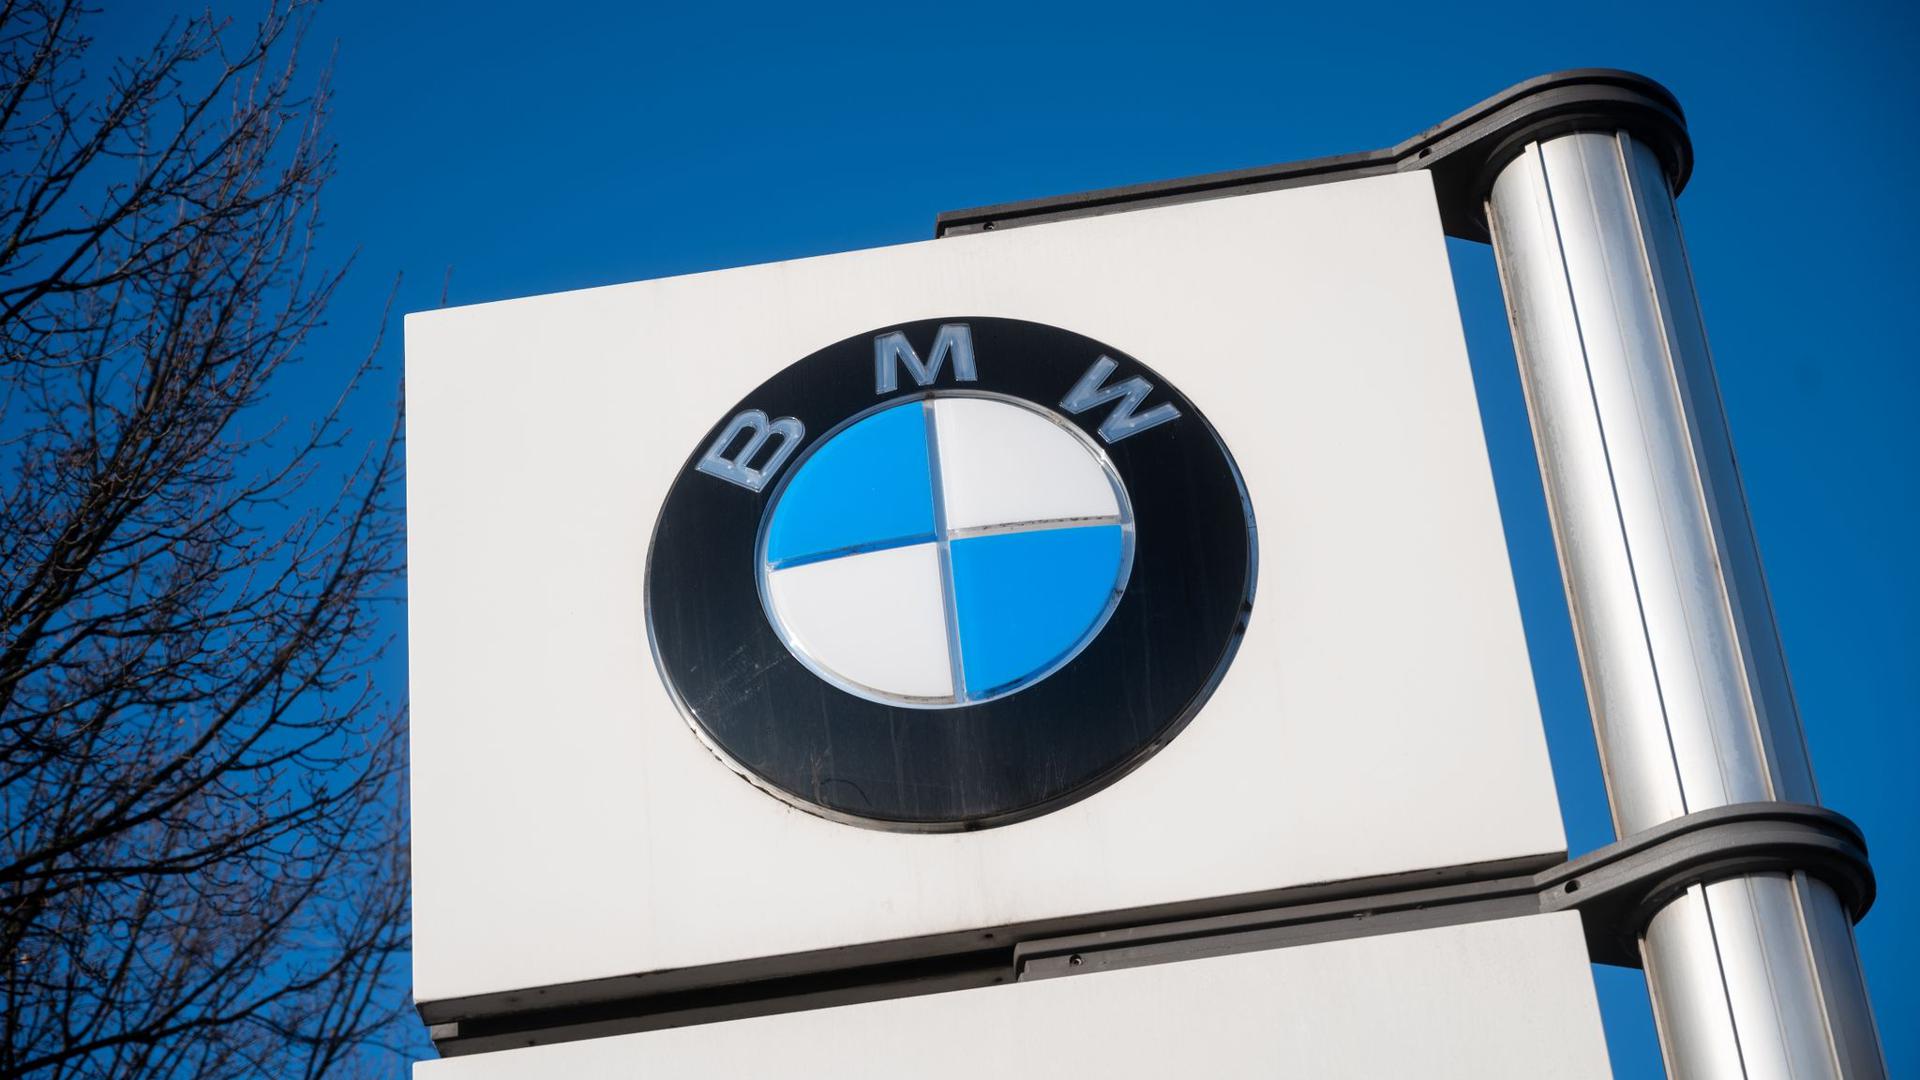 BMW weist den behaupteten Anspruch der Umwelthilfe zurück.